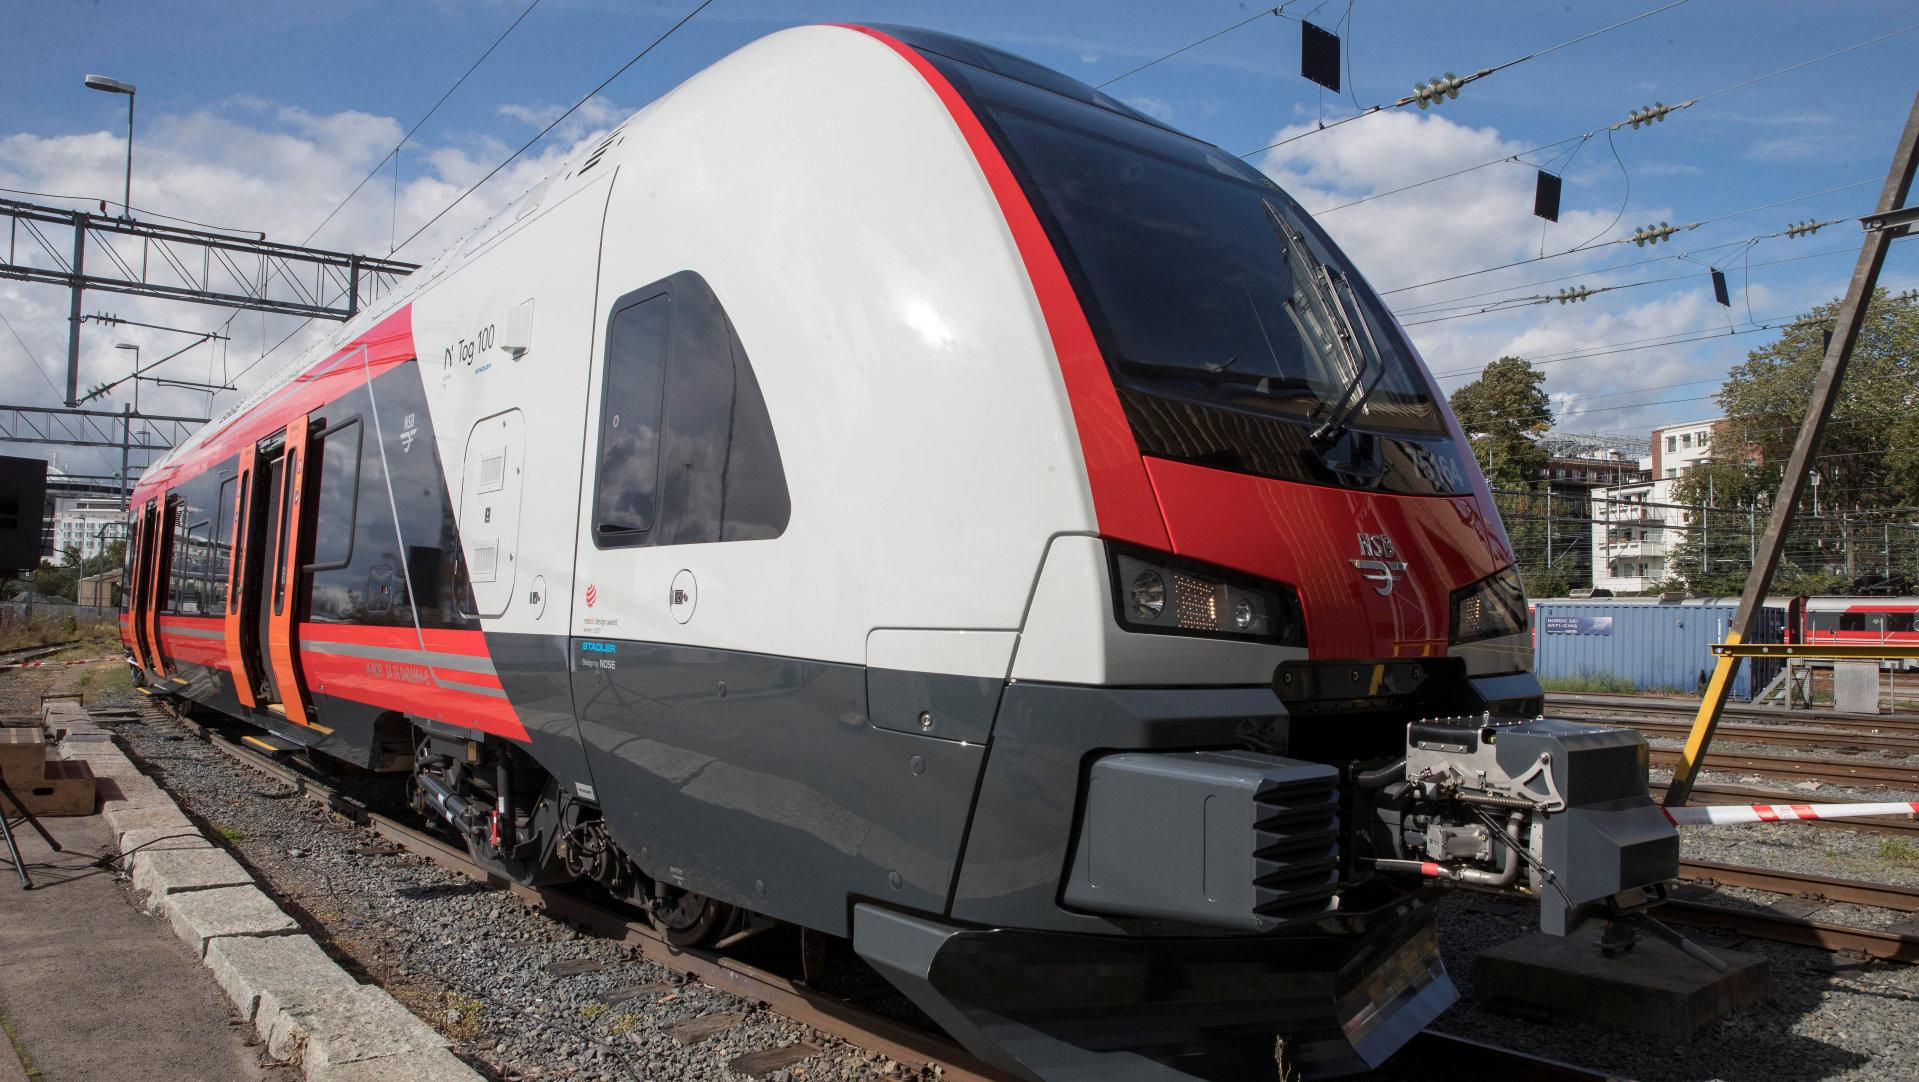 Leveringene av Flirt-togene nærmer seg slutten, og da vil det kunne ta flere år før jernbanen i Norge kan bli tilført flere nye tog. Flirt-toget på bildet var nummer 100 i rekken da det ble levert i august i fjor.